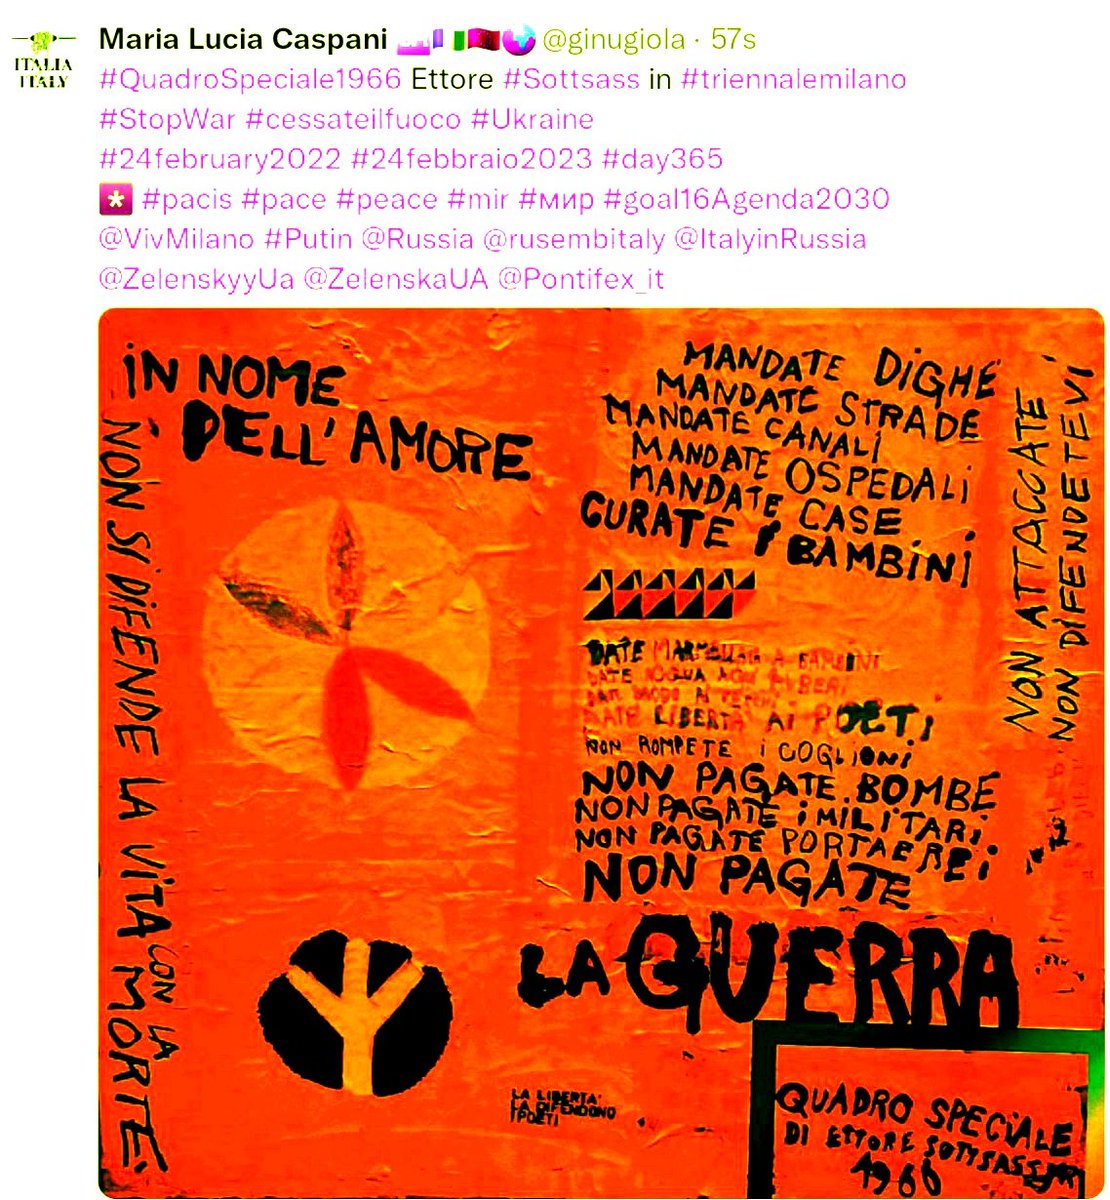 #QuadroSpeciale1966 Ettore #Sottsass 
già in mostra #triennalemi 
#StopWar #cessateilfuoco
#22May #22maggio2024
*️⃣ #pacis #mir #paz #paix
#goal16 #Agenda2030 @UN
#PremioPaceCentroArteSeverMI 
#Culture4Peace #SoloPace 
@VivMilano @wobi_it @liliaragnar @NicoEsp72 @MarianoGiustino